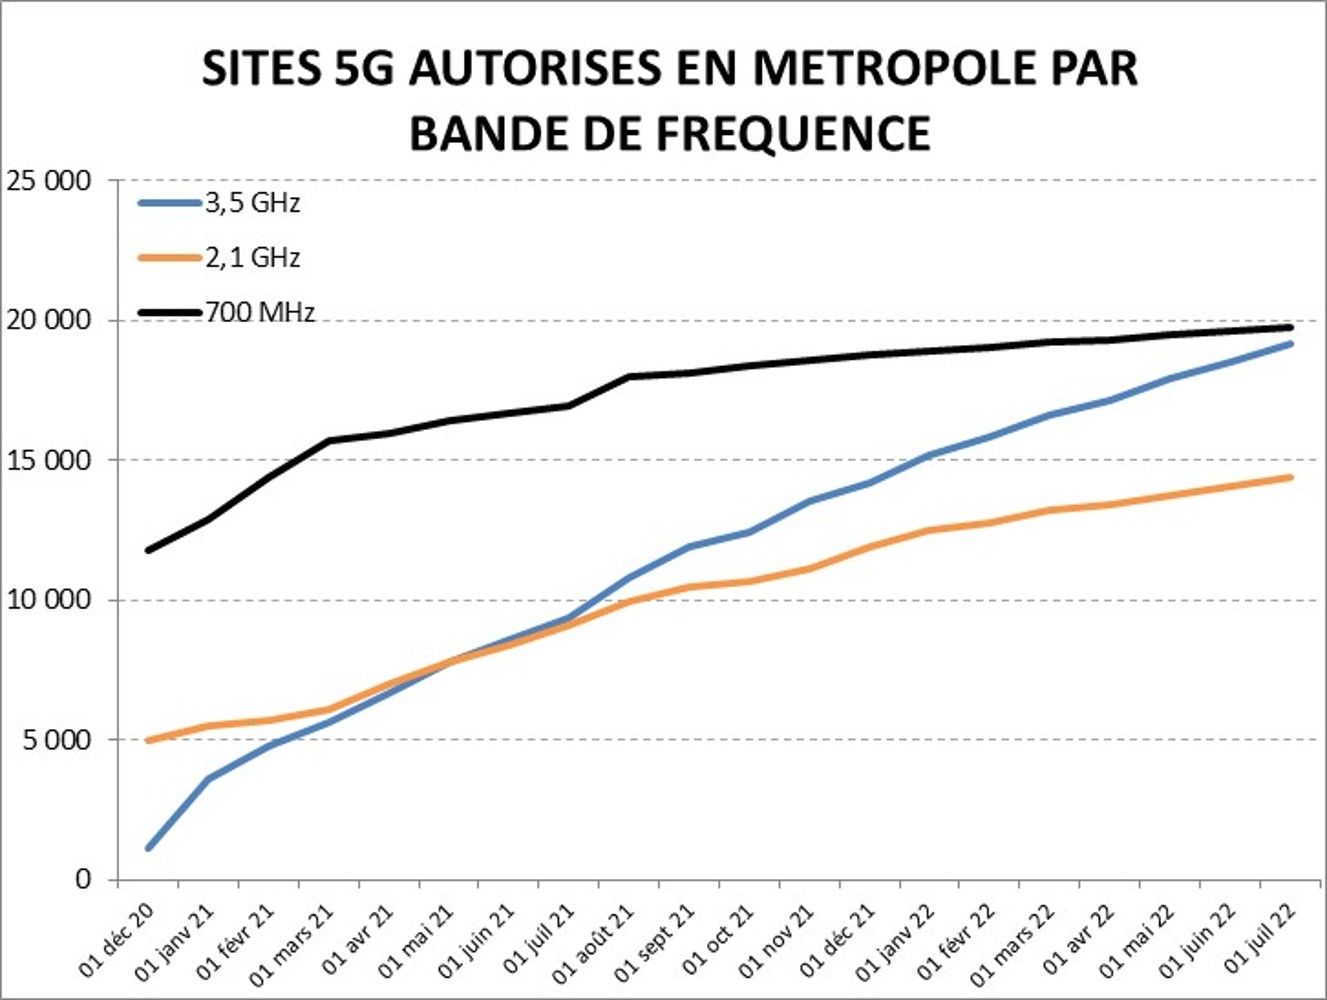 34 539 sites 5G sont autorisés en France au 01/07/2022